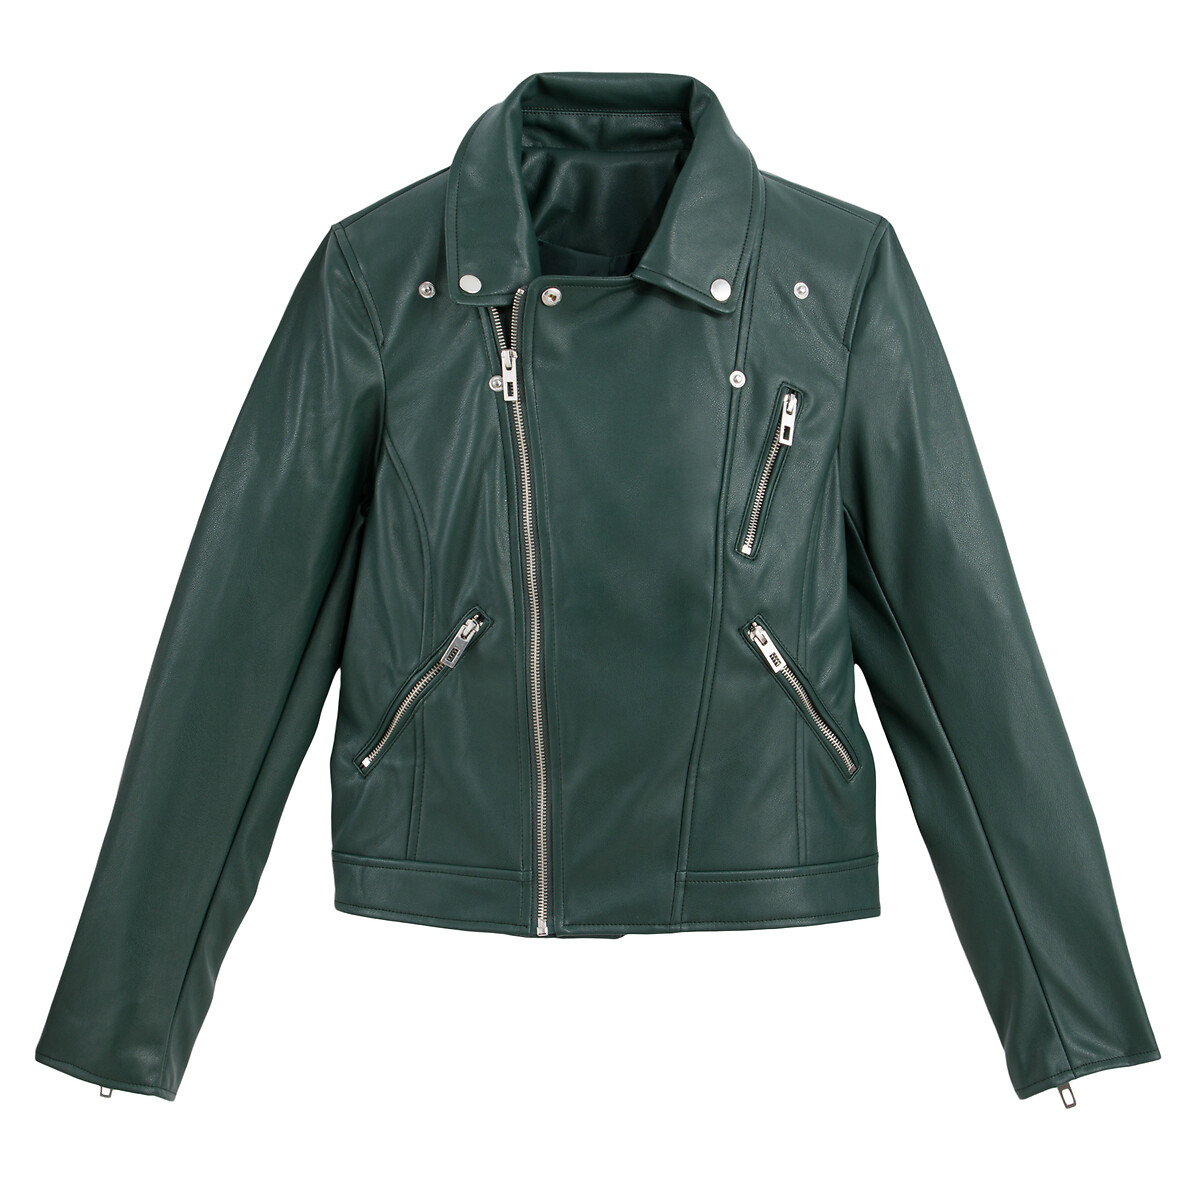 Куртка LA REDOUTE COLLECTIONS Куртка Короткая из искусственной кожи 40 (FR) - 46 (RUS) зеленый, размер 40 (FR) - 46 (RUS) Куртка Короткая из искусственной кожи 40 (FR) - 46 (RUS) зеленый - фото 5